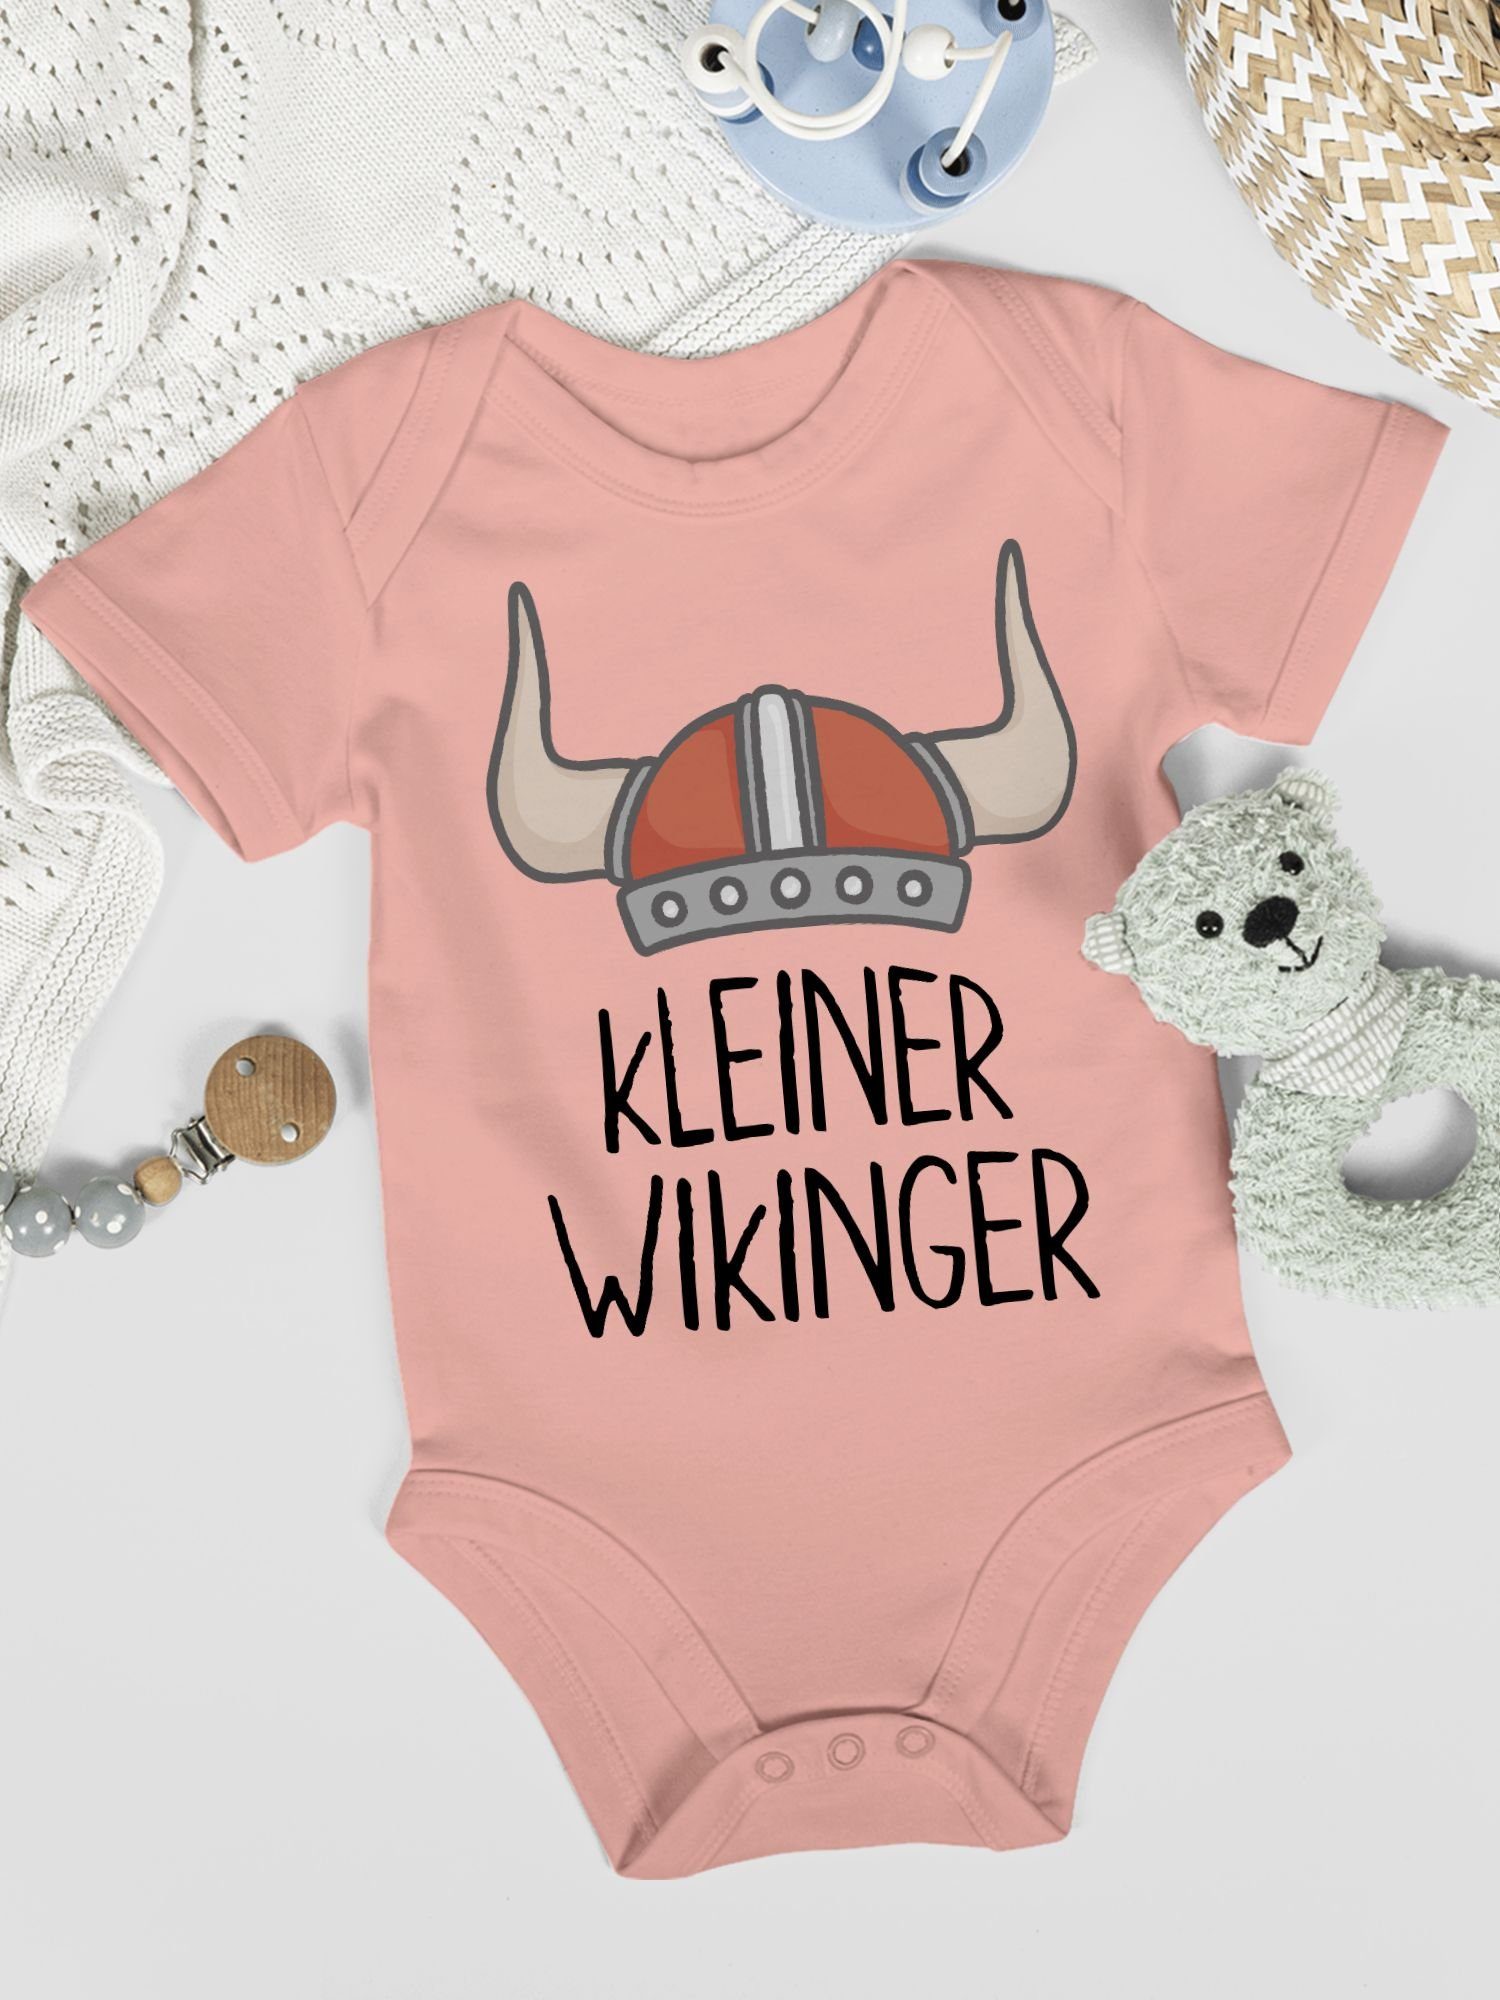 & Wikinger Walhalla Babyrosa Wikinger Baby Shirtbody Shirtracer 2 kleiner